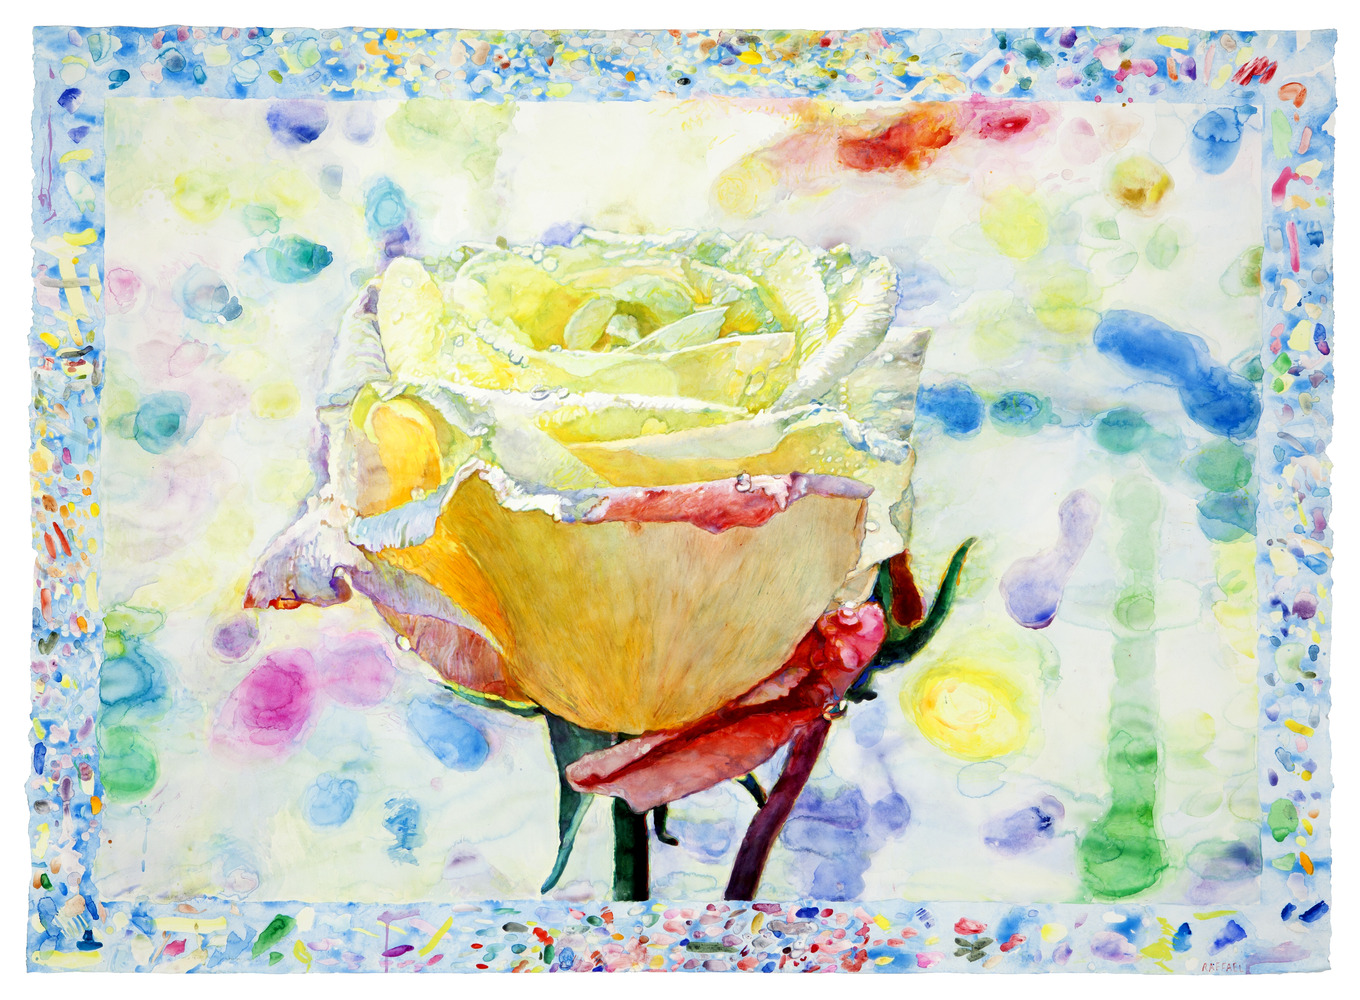 La Rose d'Ariane - aquarelle sur papier by Joseph Raffael